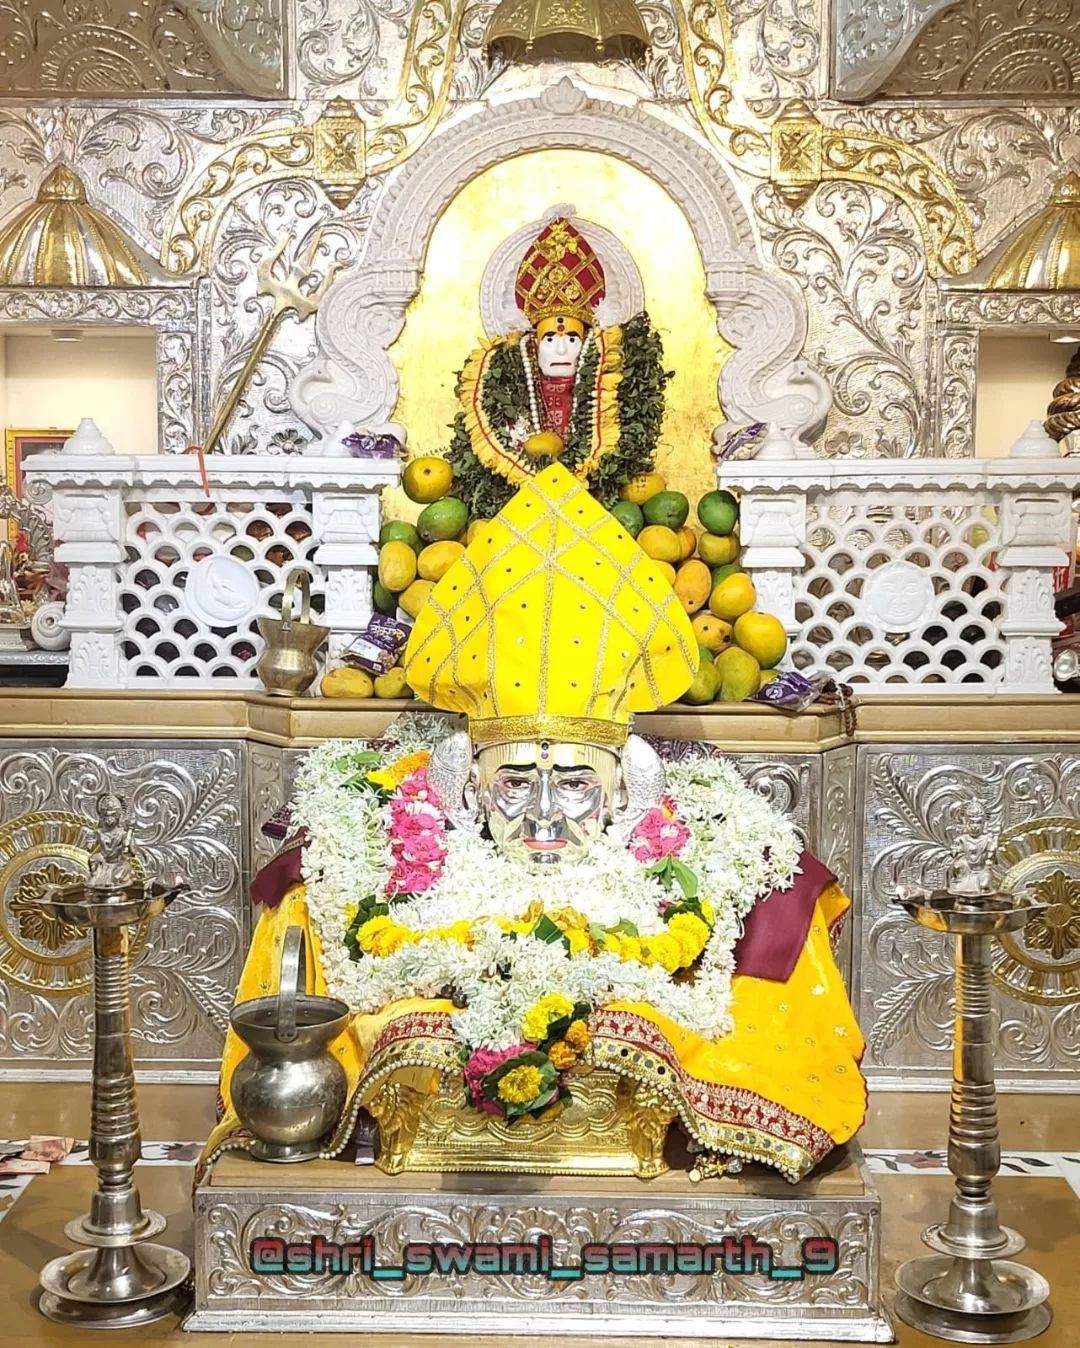 Swami samarth darshan akkalkot